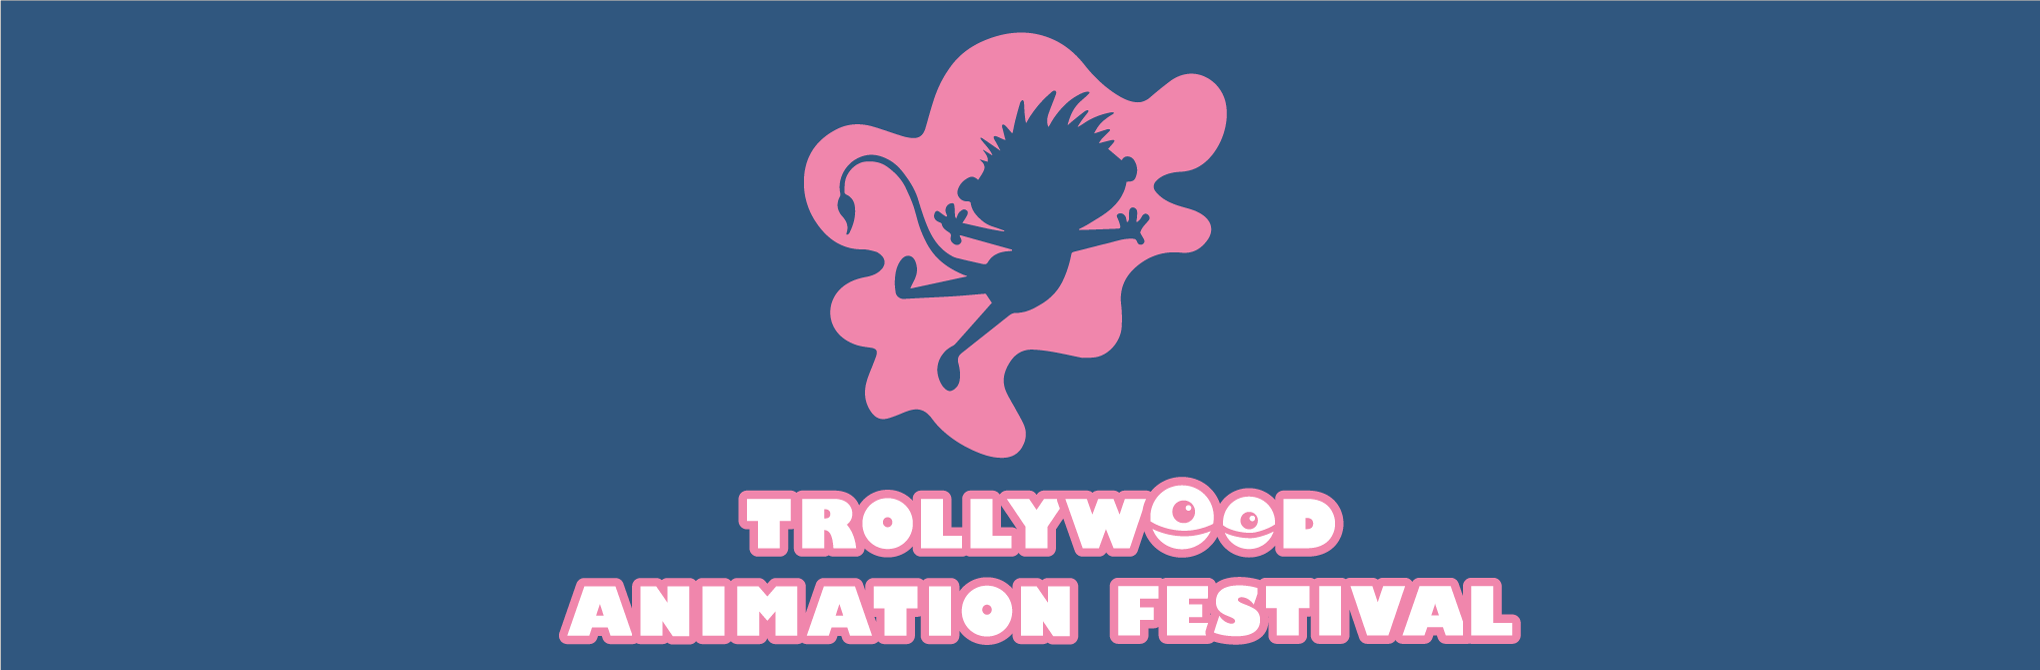 Ett litet troll hoppar upp i luften och texten Trollywood Animation Festival